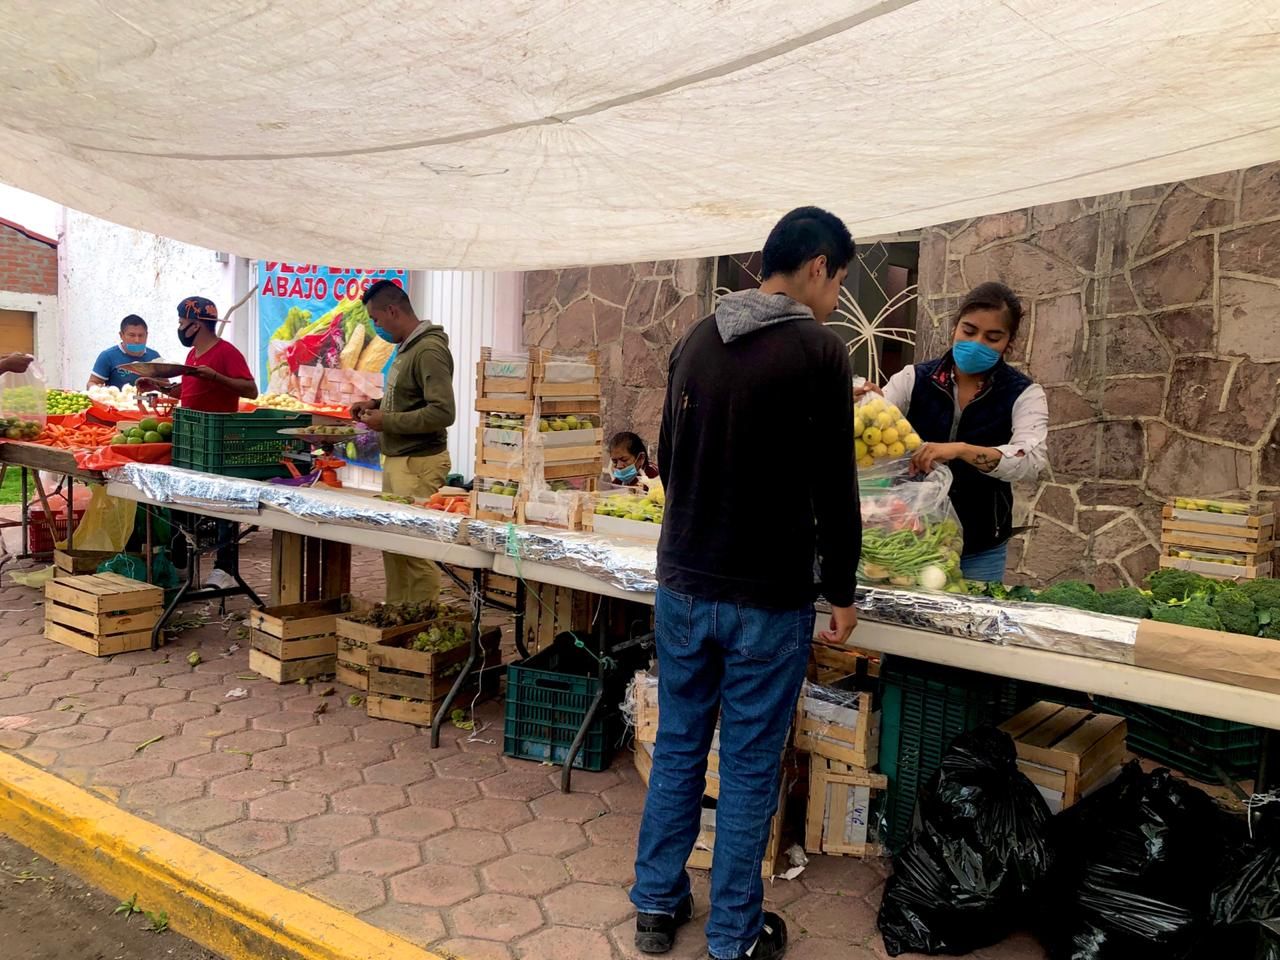 Acuden vecinos de Tepetitlán por la despensa de verduras a bajo costo